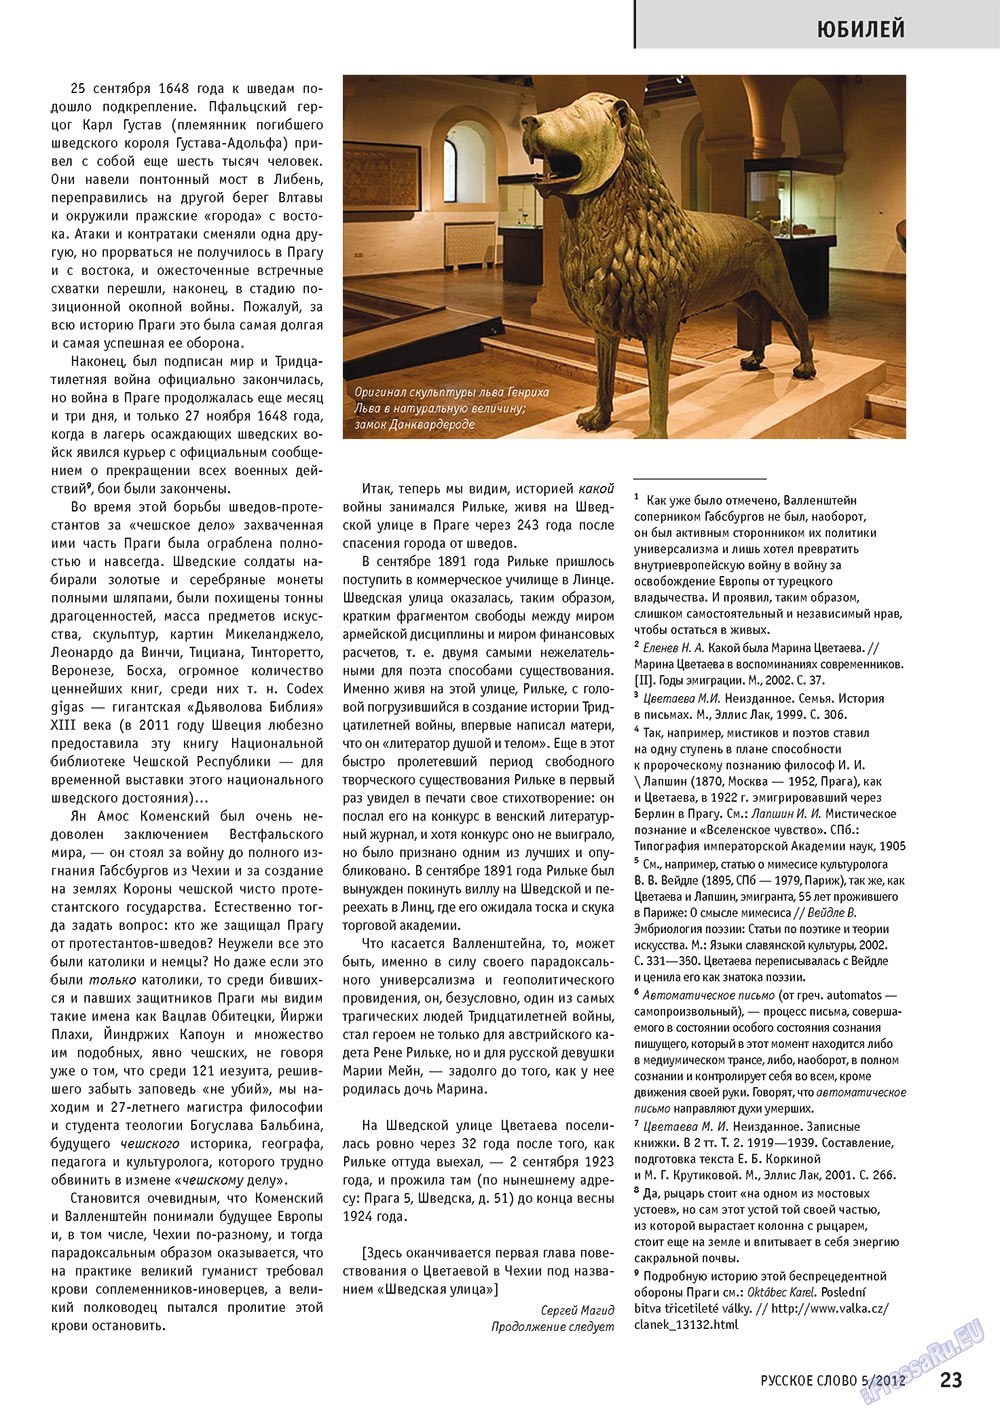 Русское слово, журнал. 2012 №5 стр.23